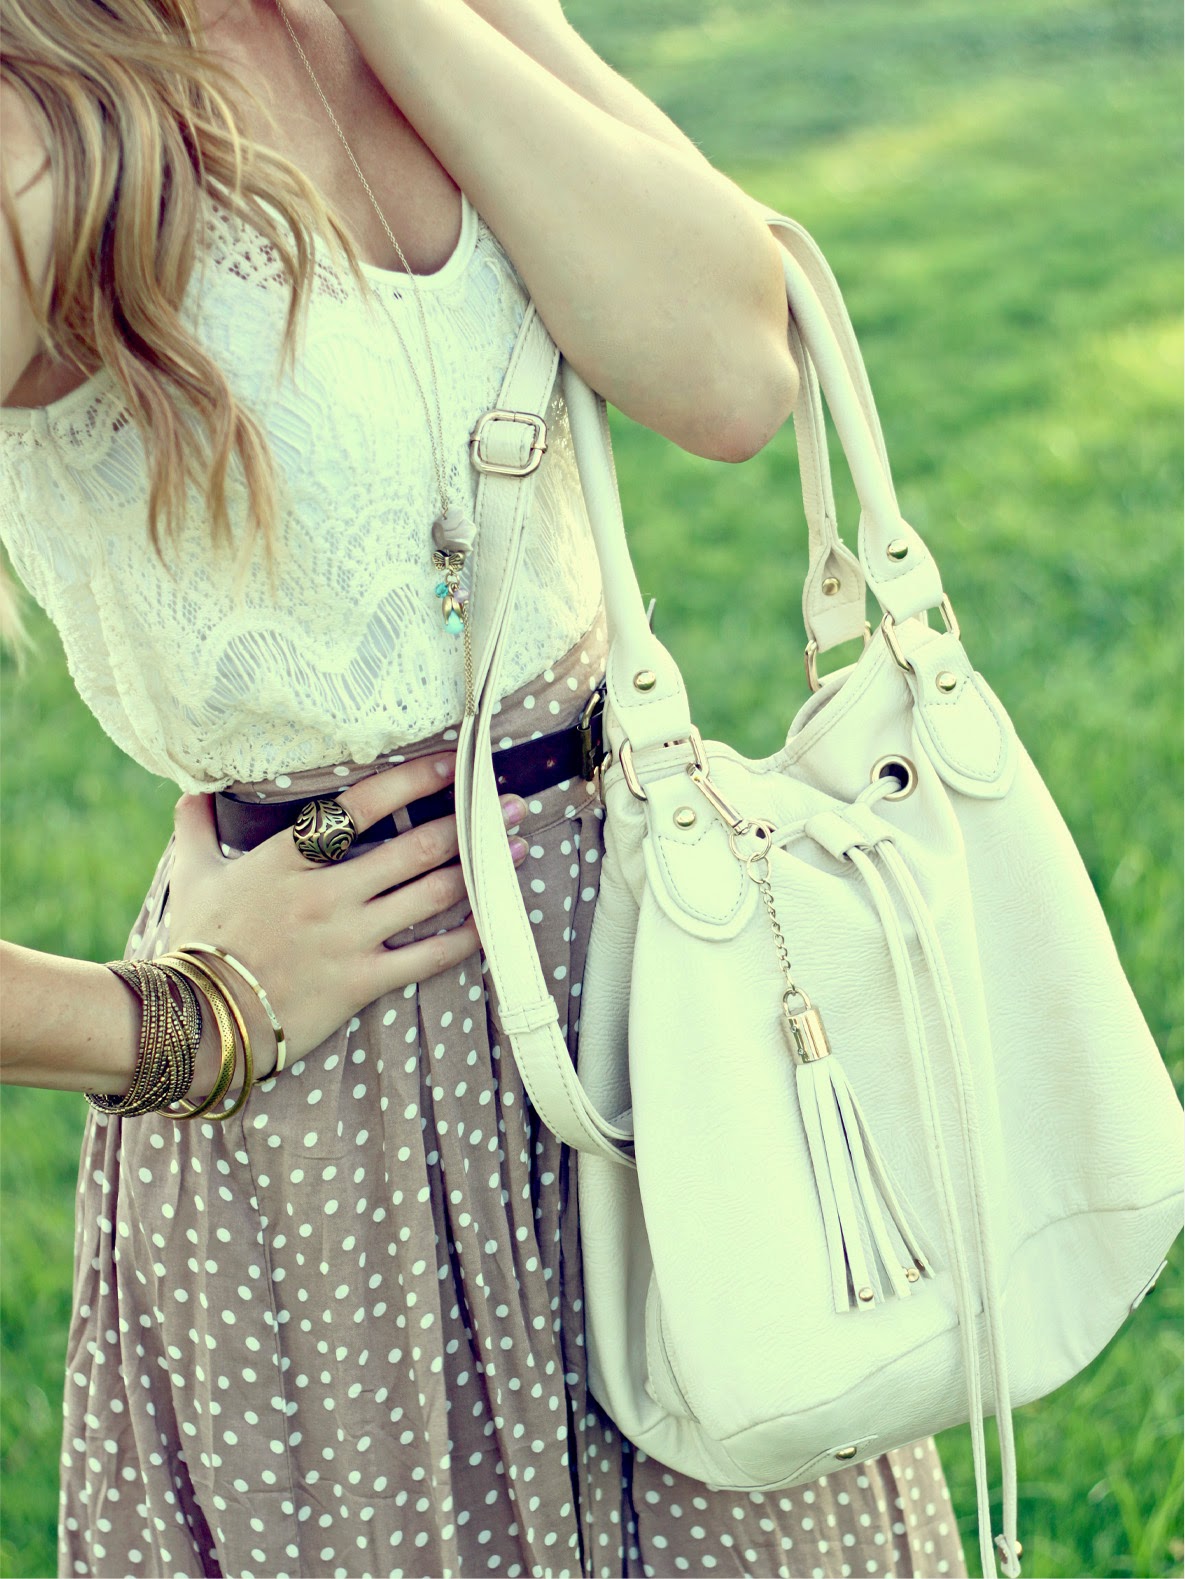 Doted Skirt With White Handbag And Top